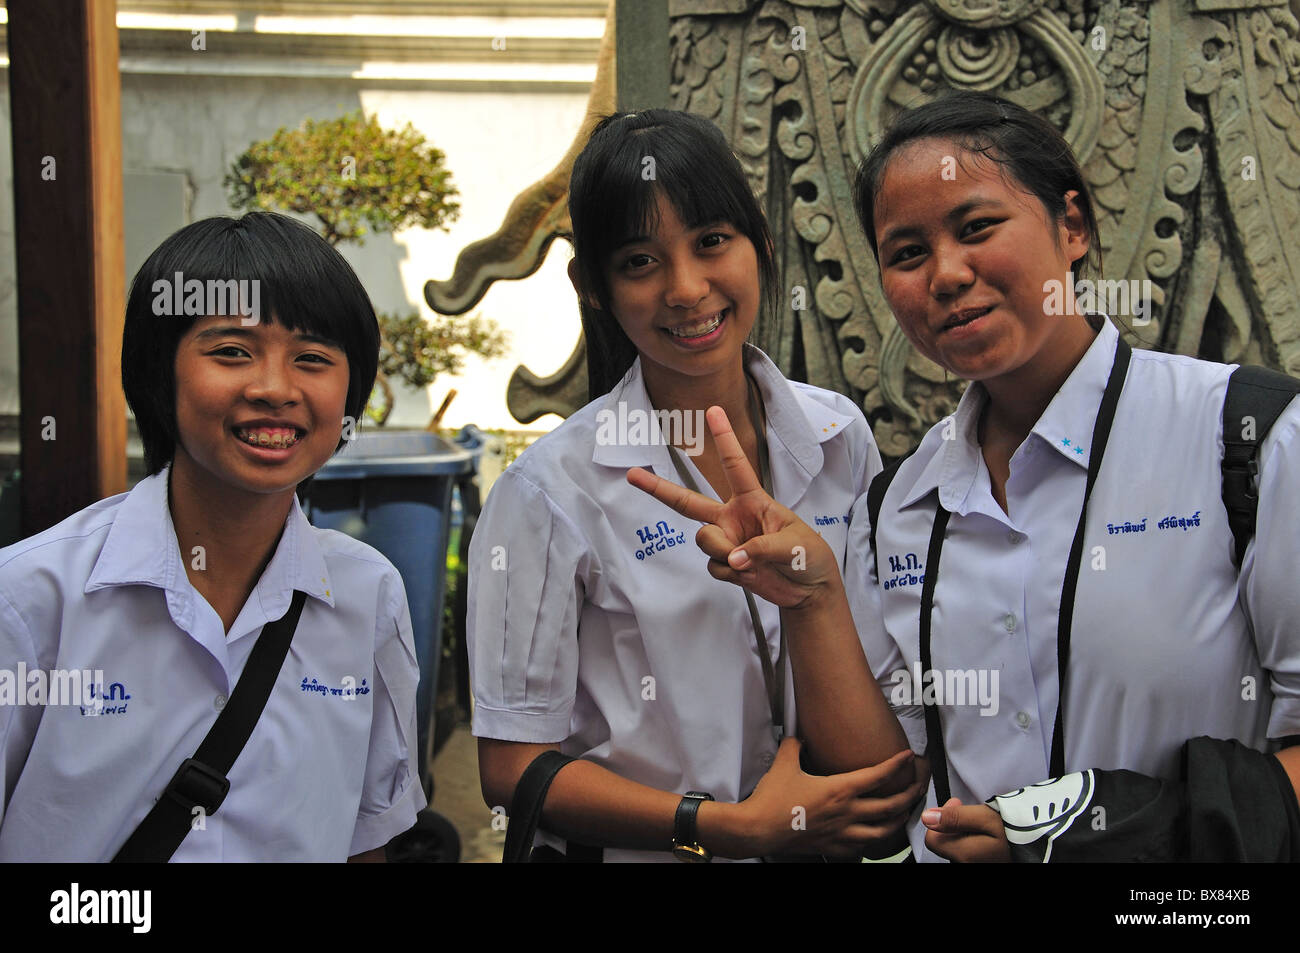 Smiling écolières, Wat Pho, Temple de l'île Rattanakosin, Bangkok, Thaïlande Banque D'Images